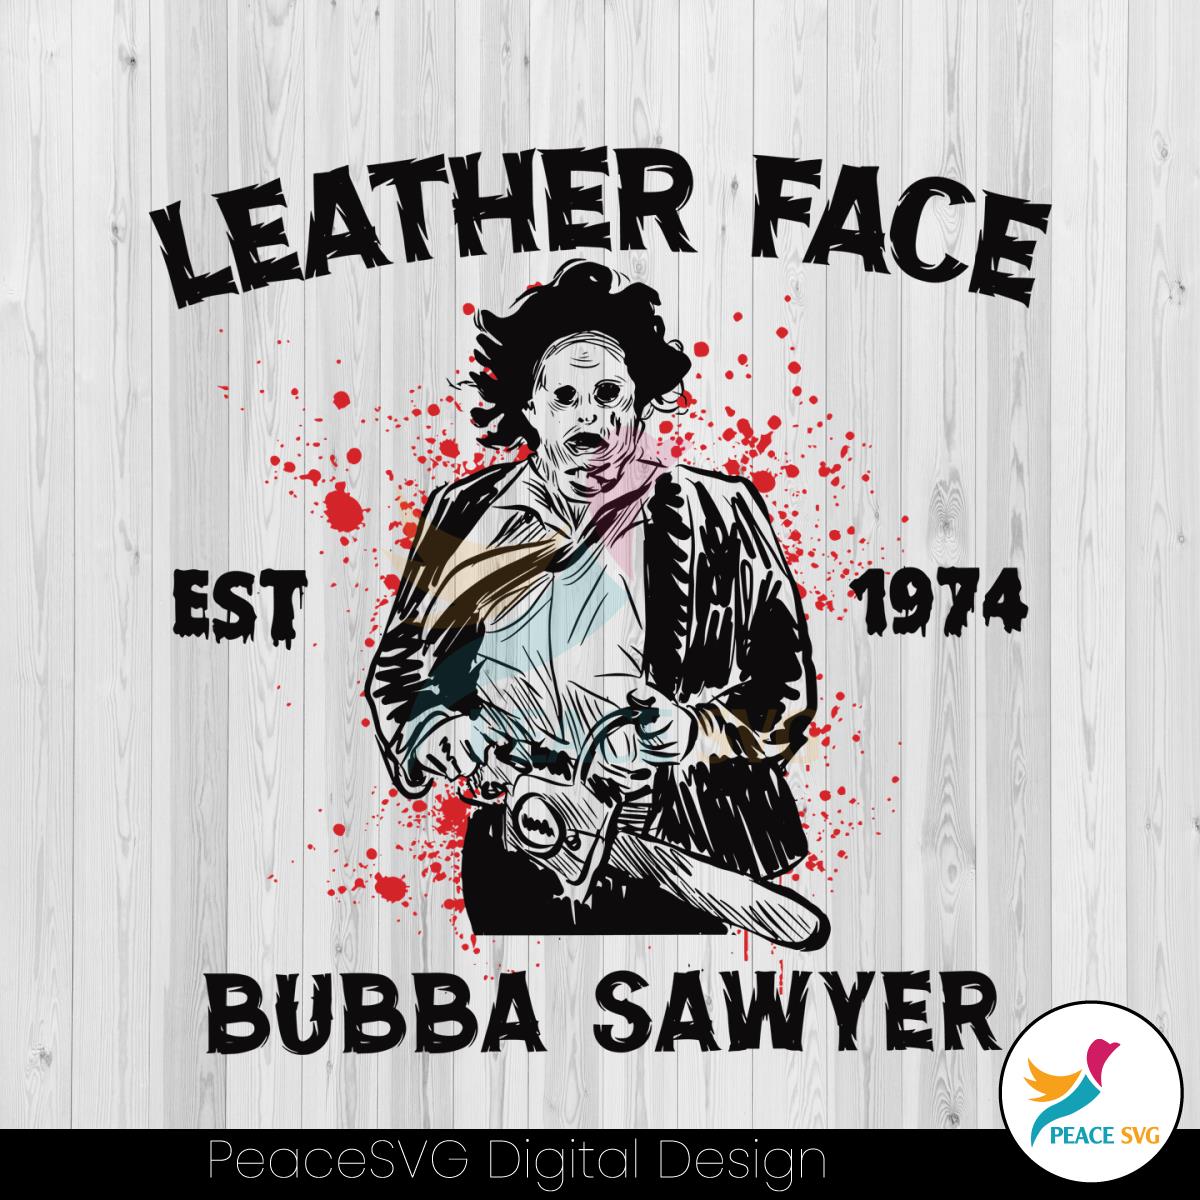 leather-face-bubba-sawyer-est-1974-svg-digital-cricut-file